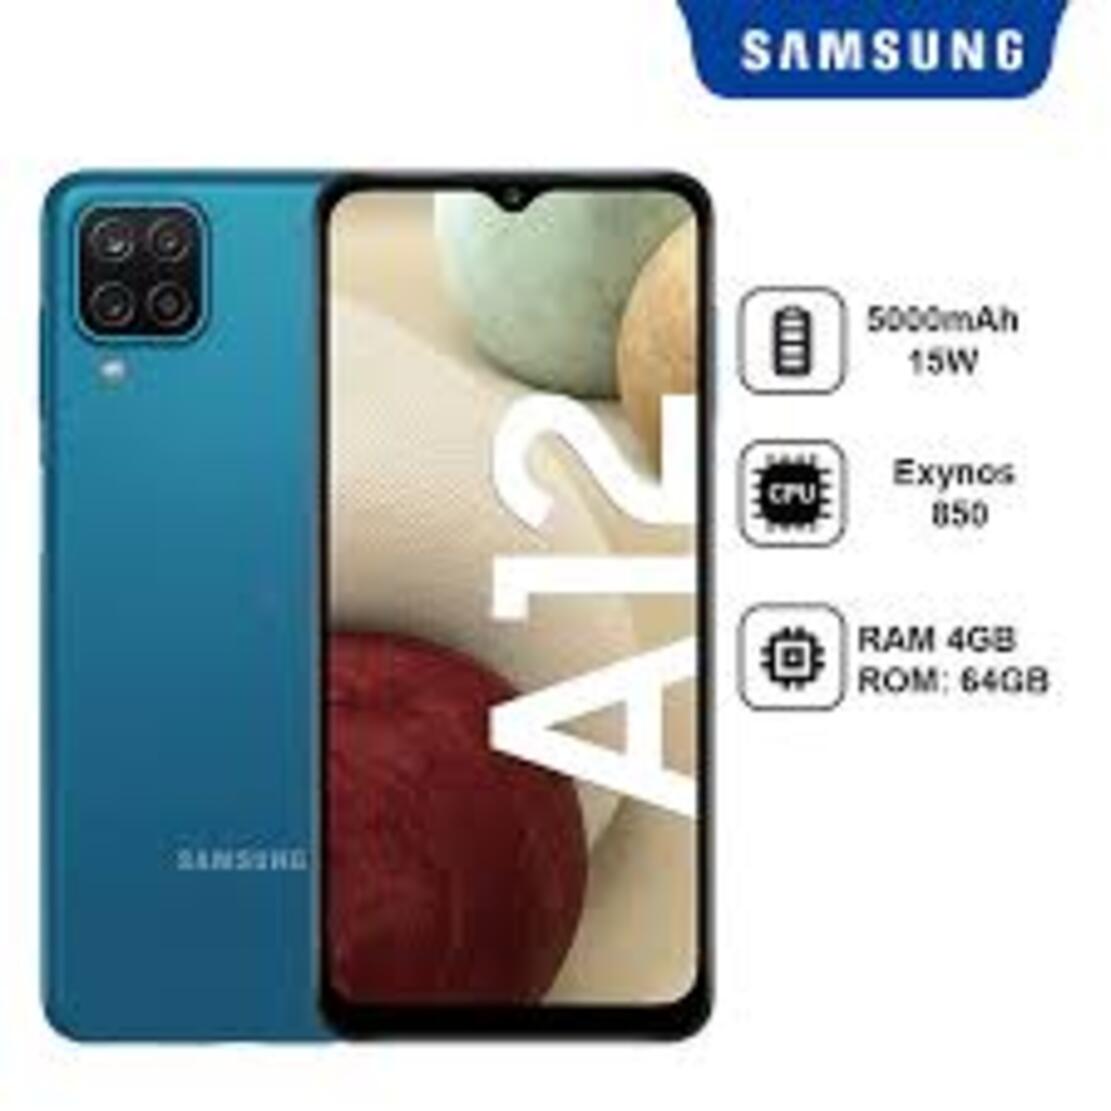 điện thoại Samsung Galaxy A12 máy 2sim ram 4G/128G Chính Hãng, Màn hình: PLS TFT LCD6.5"HD+ - Bảo hành 12 tháng